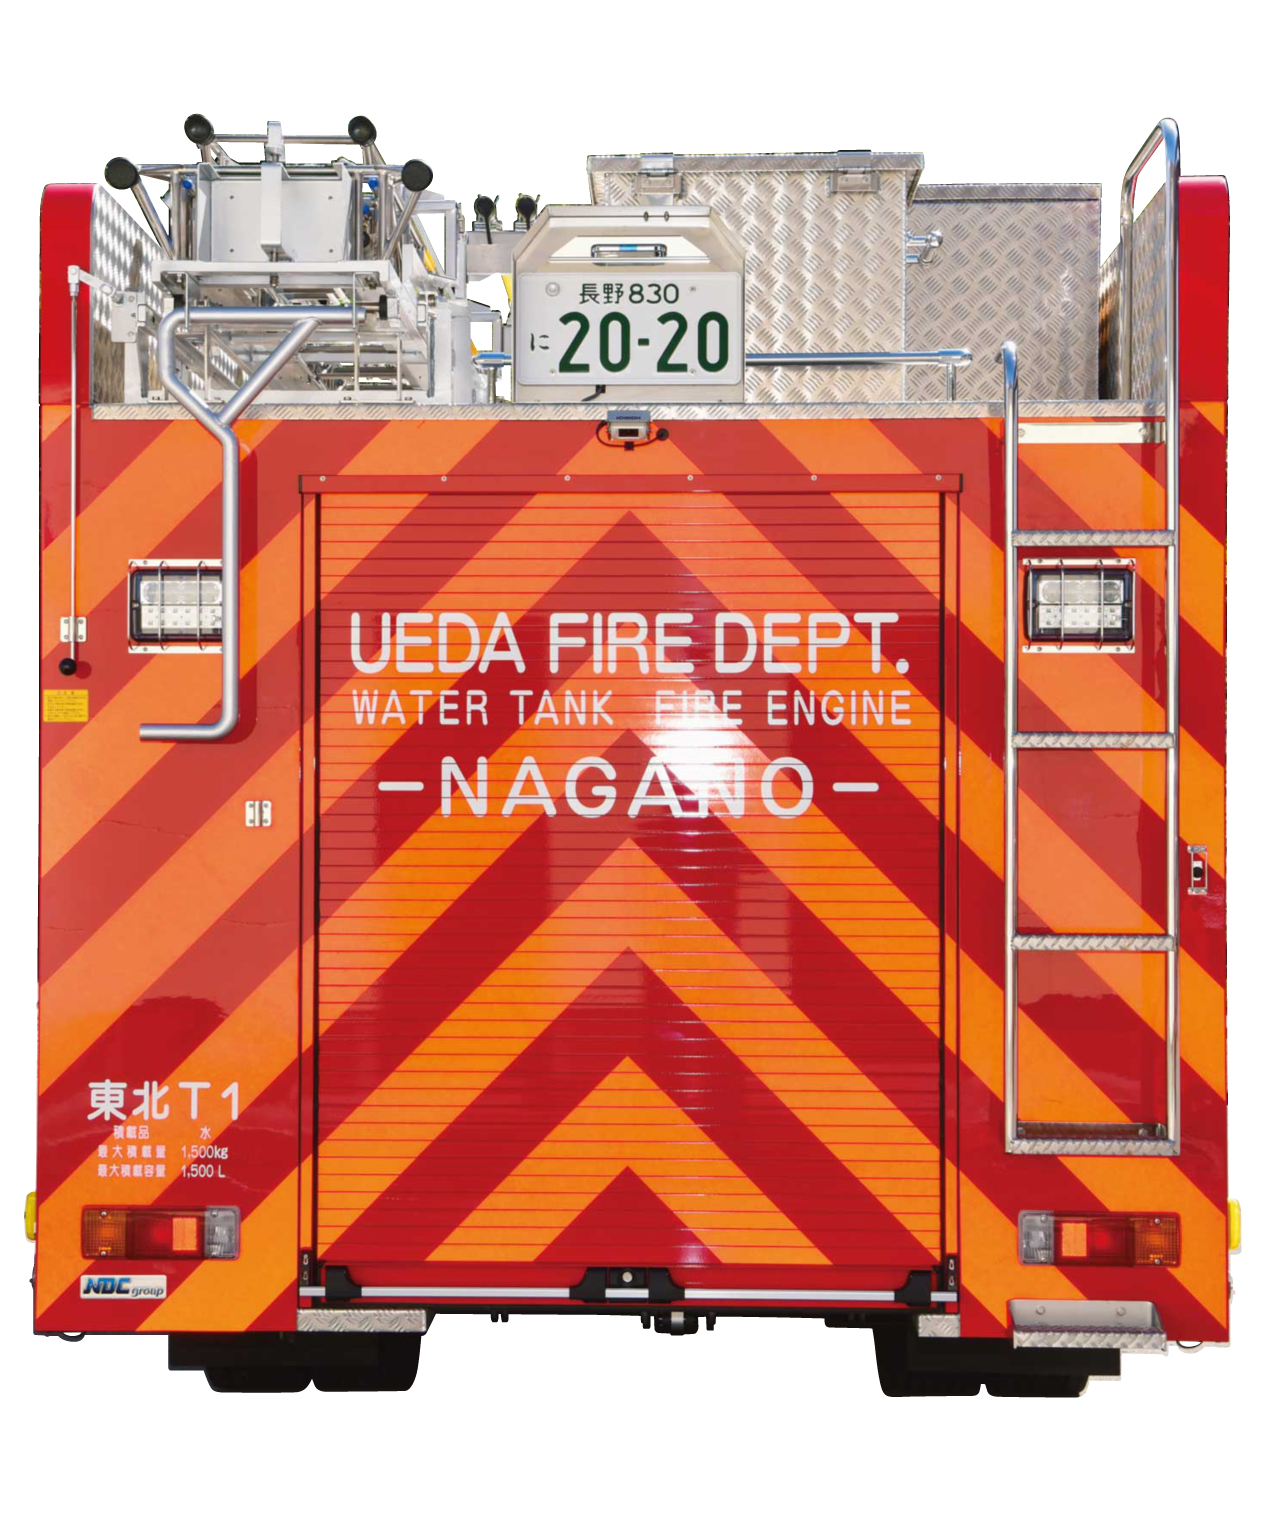 上信越道での救助活動を考慮して、後面には反射材を使用したシェブロン・マーキングを採用。上田広域消防初採用の新機軸。